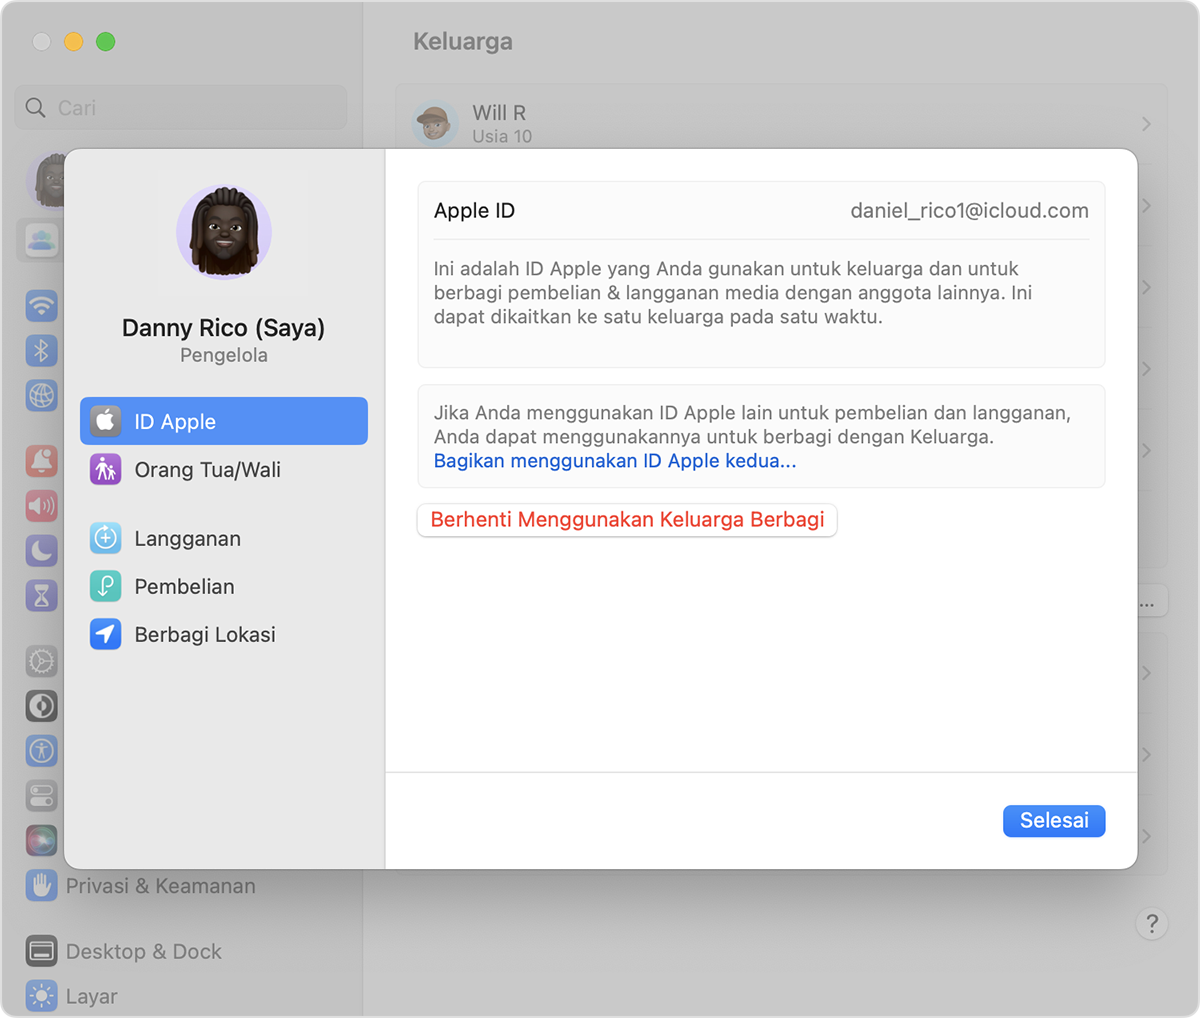 Berhenti Menggunakan Keluarga Berbagi terletak di bawah ‘Bagikan menggunakan ID Apple kedua’.